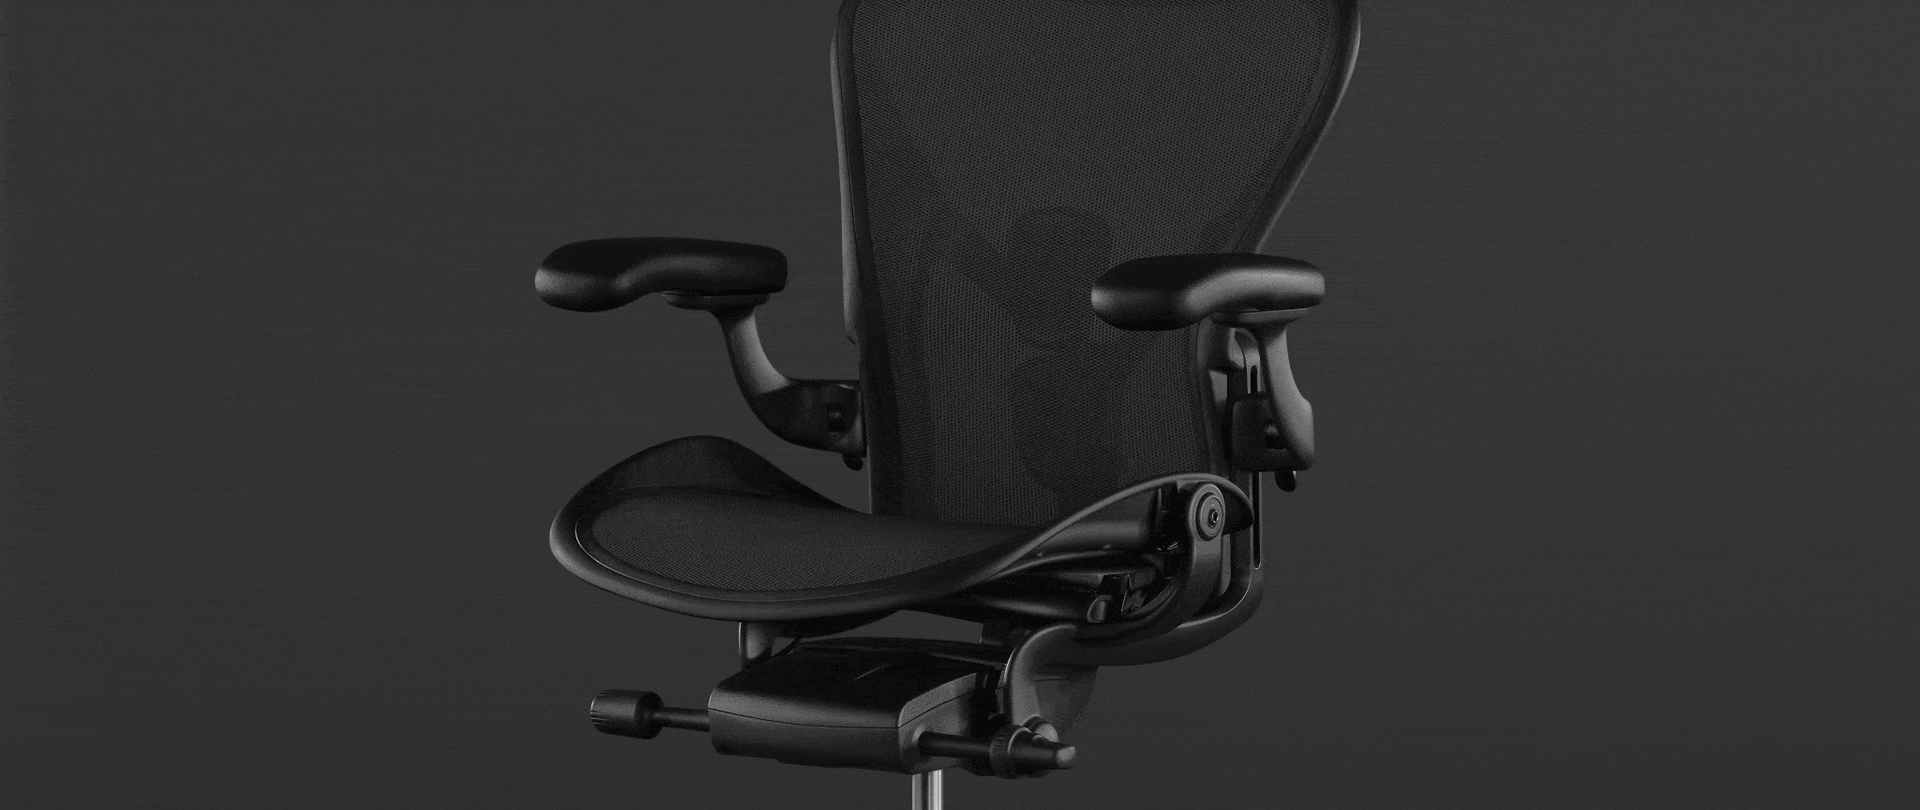 Animation vor einem Foto des Aeron Stuhls in Schwarz zeigt, wie der Stuhl dank seiner Neigung Körperbewegungen auf natürliche Weise folgt, sodass Sie einfach und mühelos die Sitzhaltung wechseln können, vom aufrechten Sitzen zum entspannte Zurücklehnen.